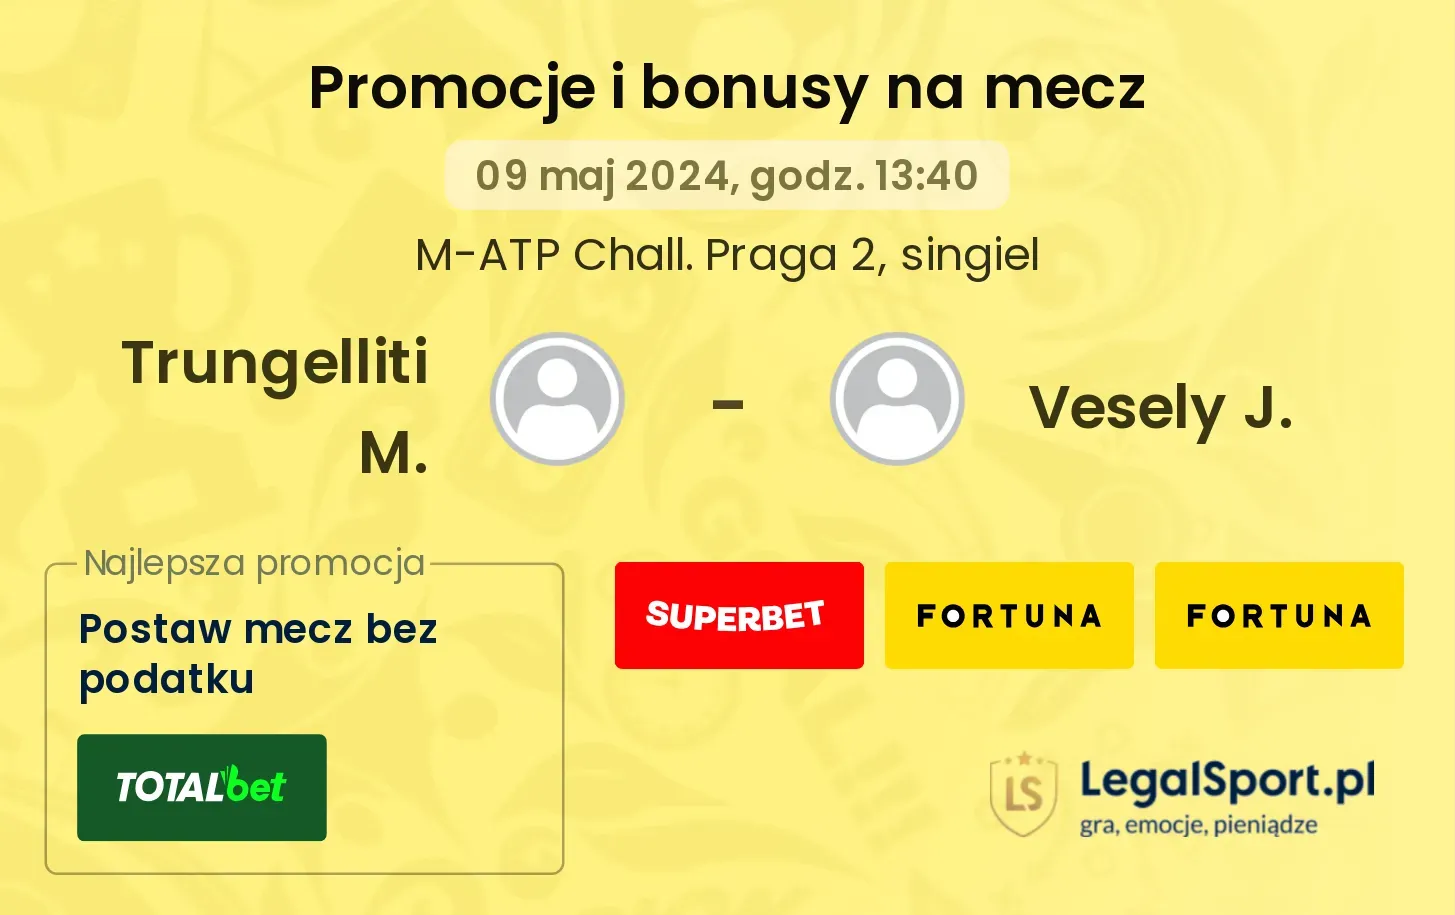 Trungelliti M. - Vesely J. promocje bonusy na mecz